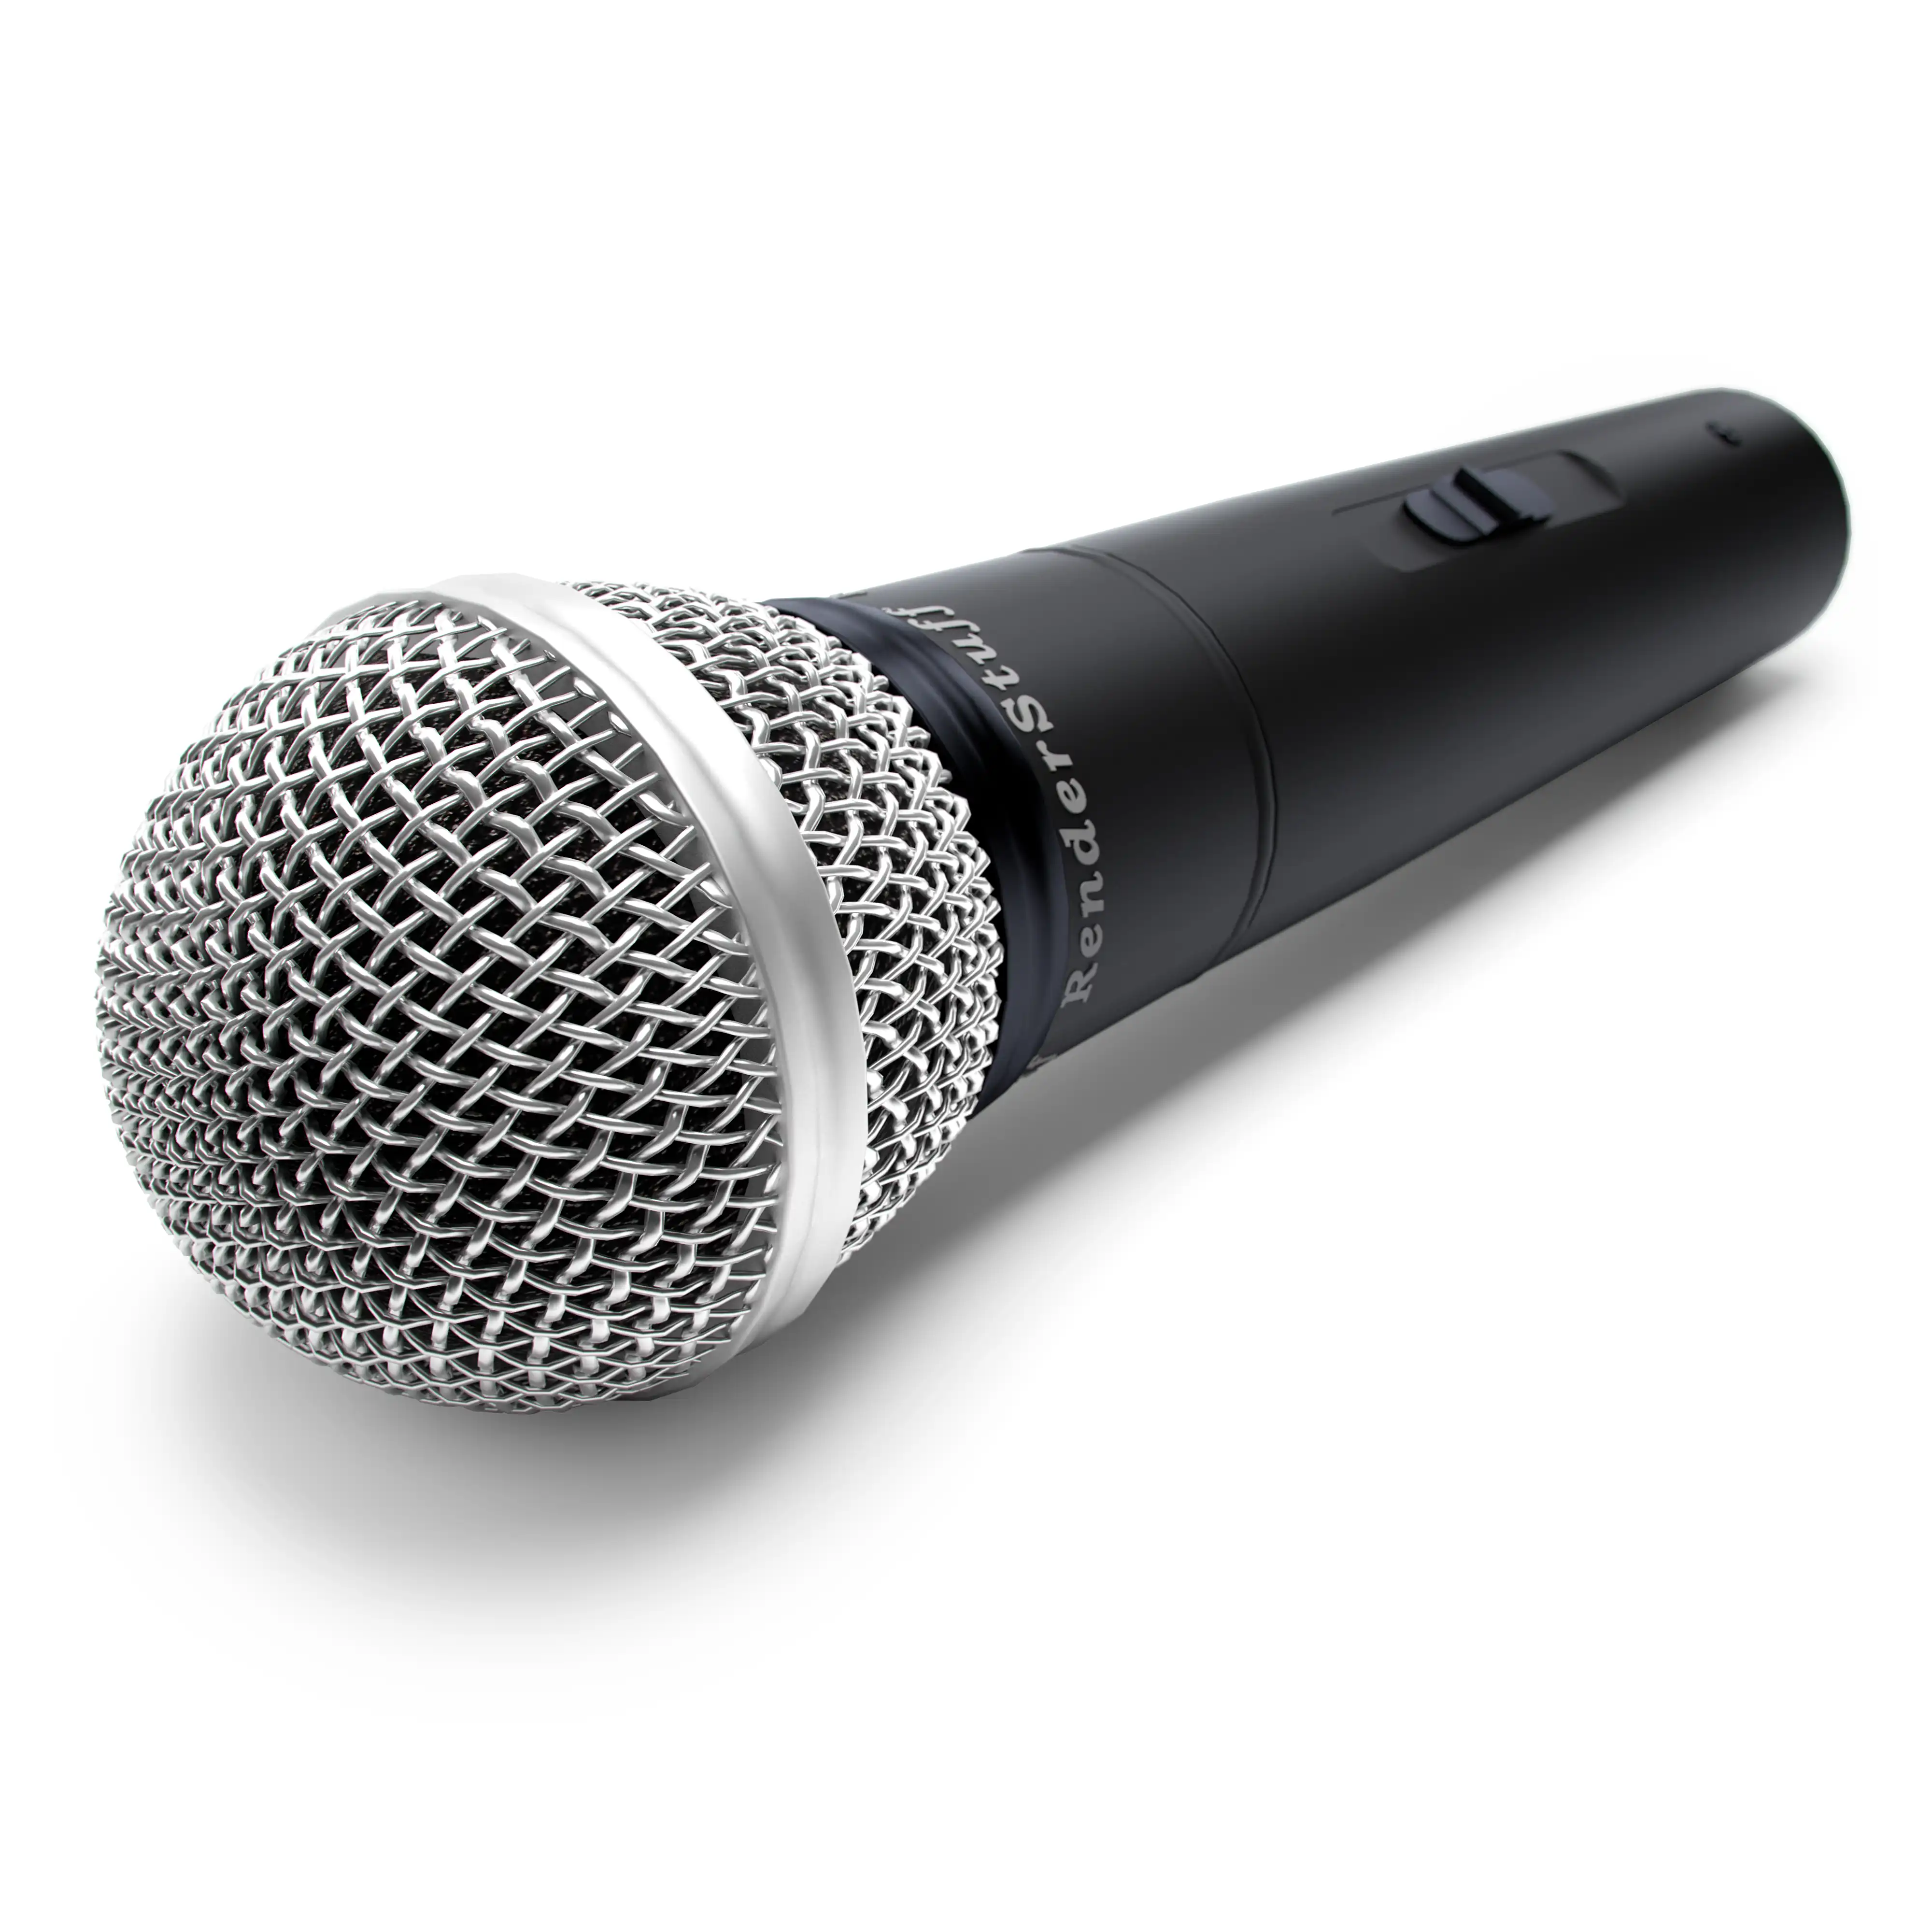 Ultra realistic free 3D model of wireless portable karaoke microphone.